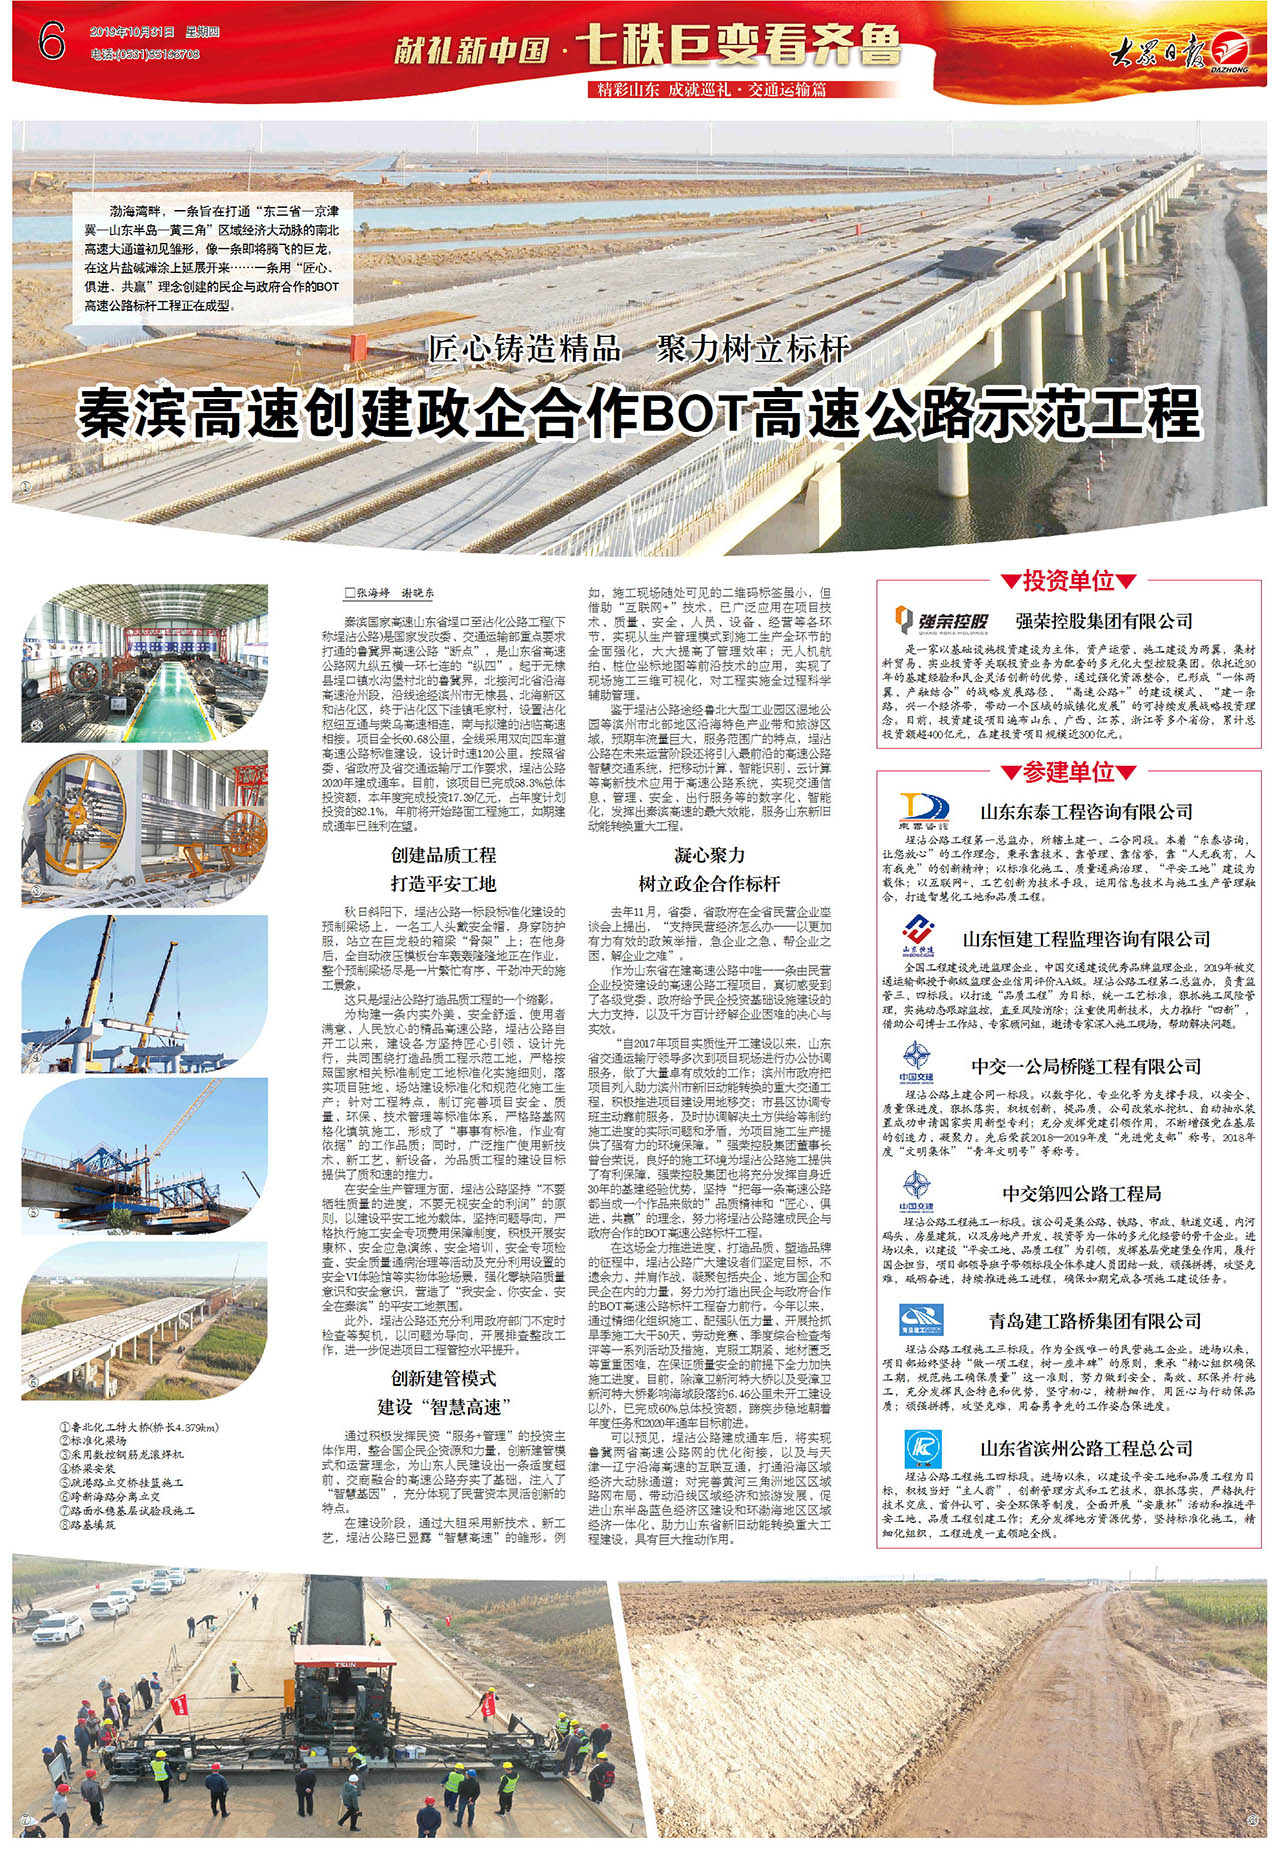 大众日报：秦滨高速创建政企合作BOT高速公路示范工程